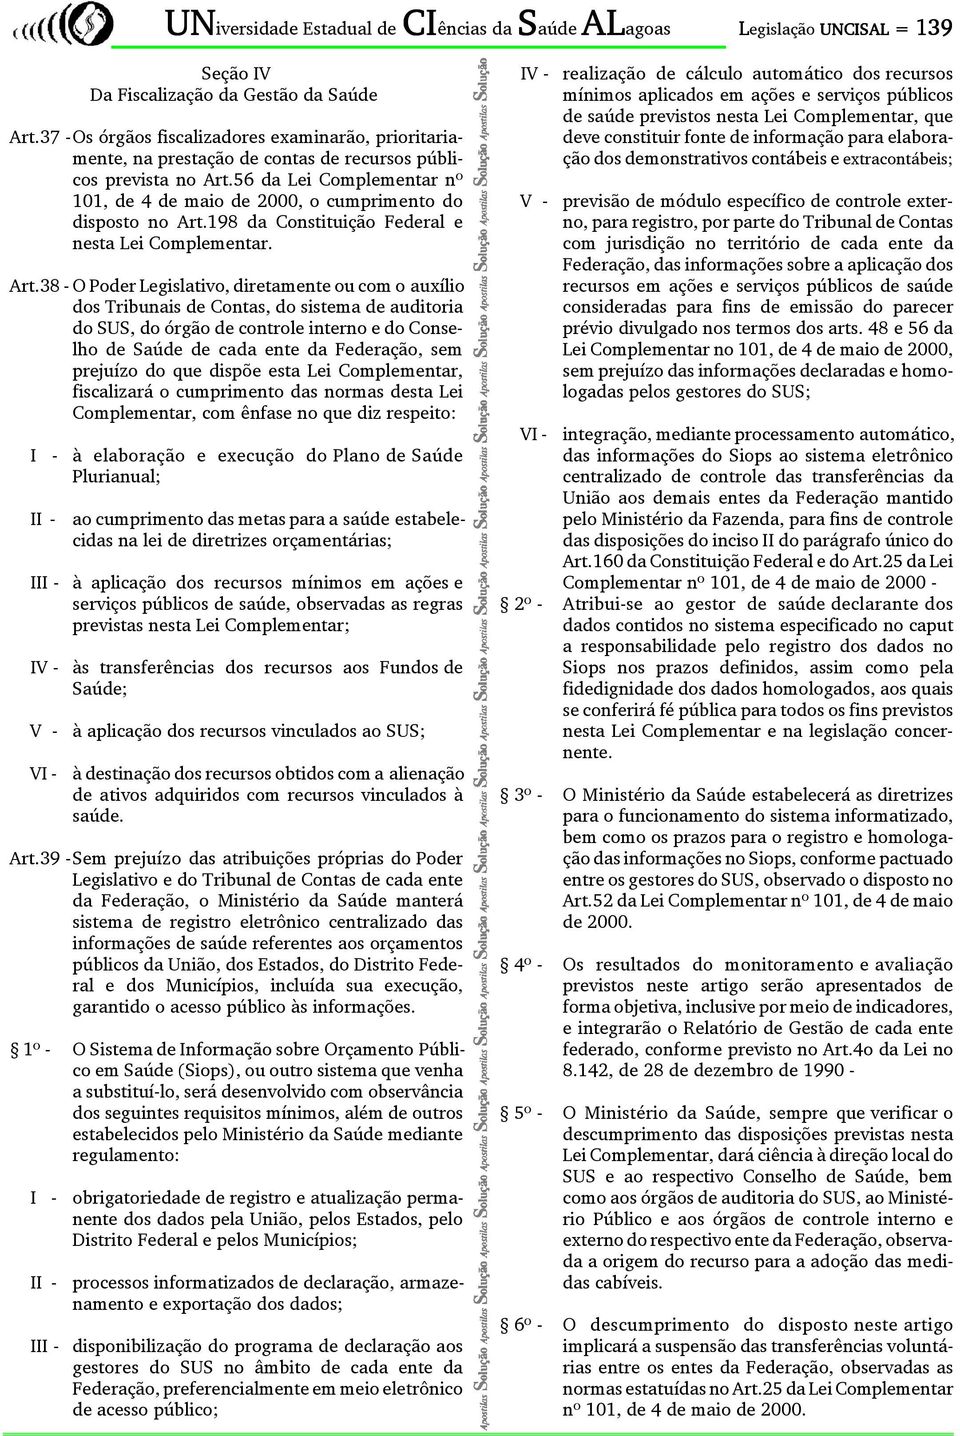 56 da Lei Complementar nº 101, de 4 de maio de 2000, o cumprimento do disposto no Art.